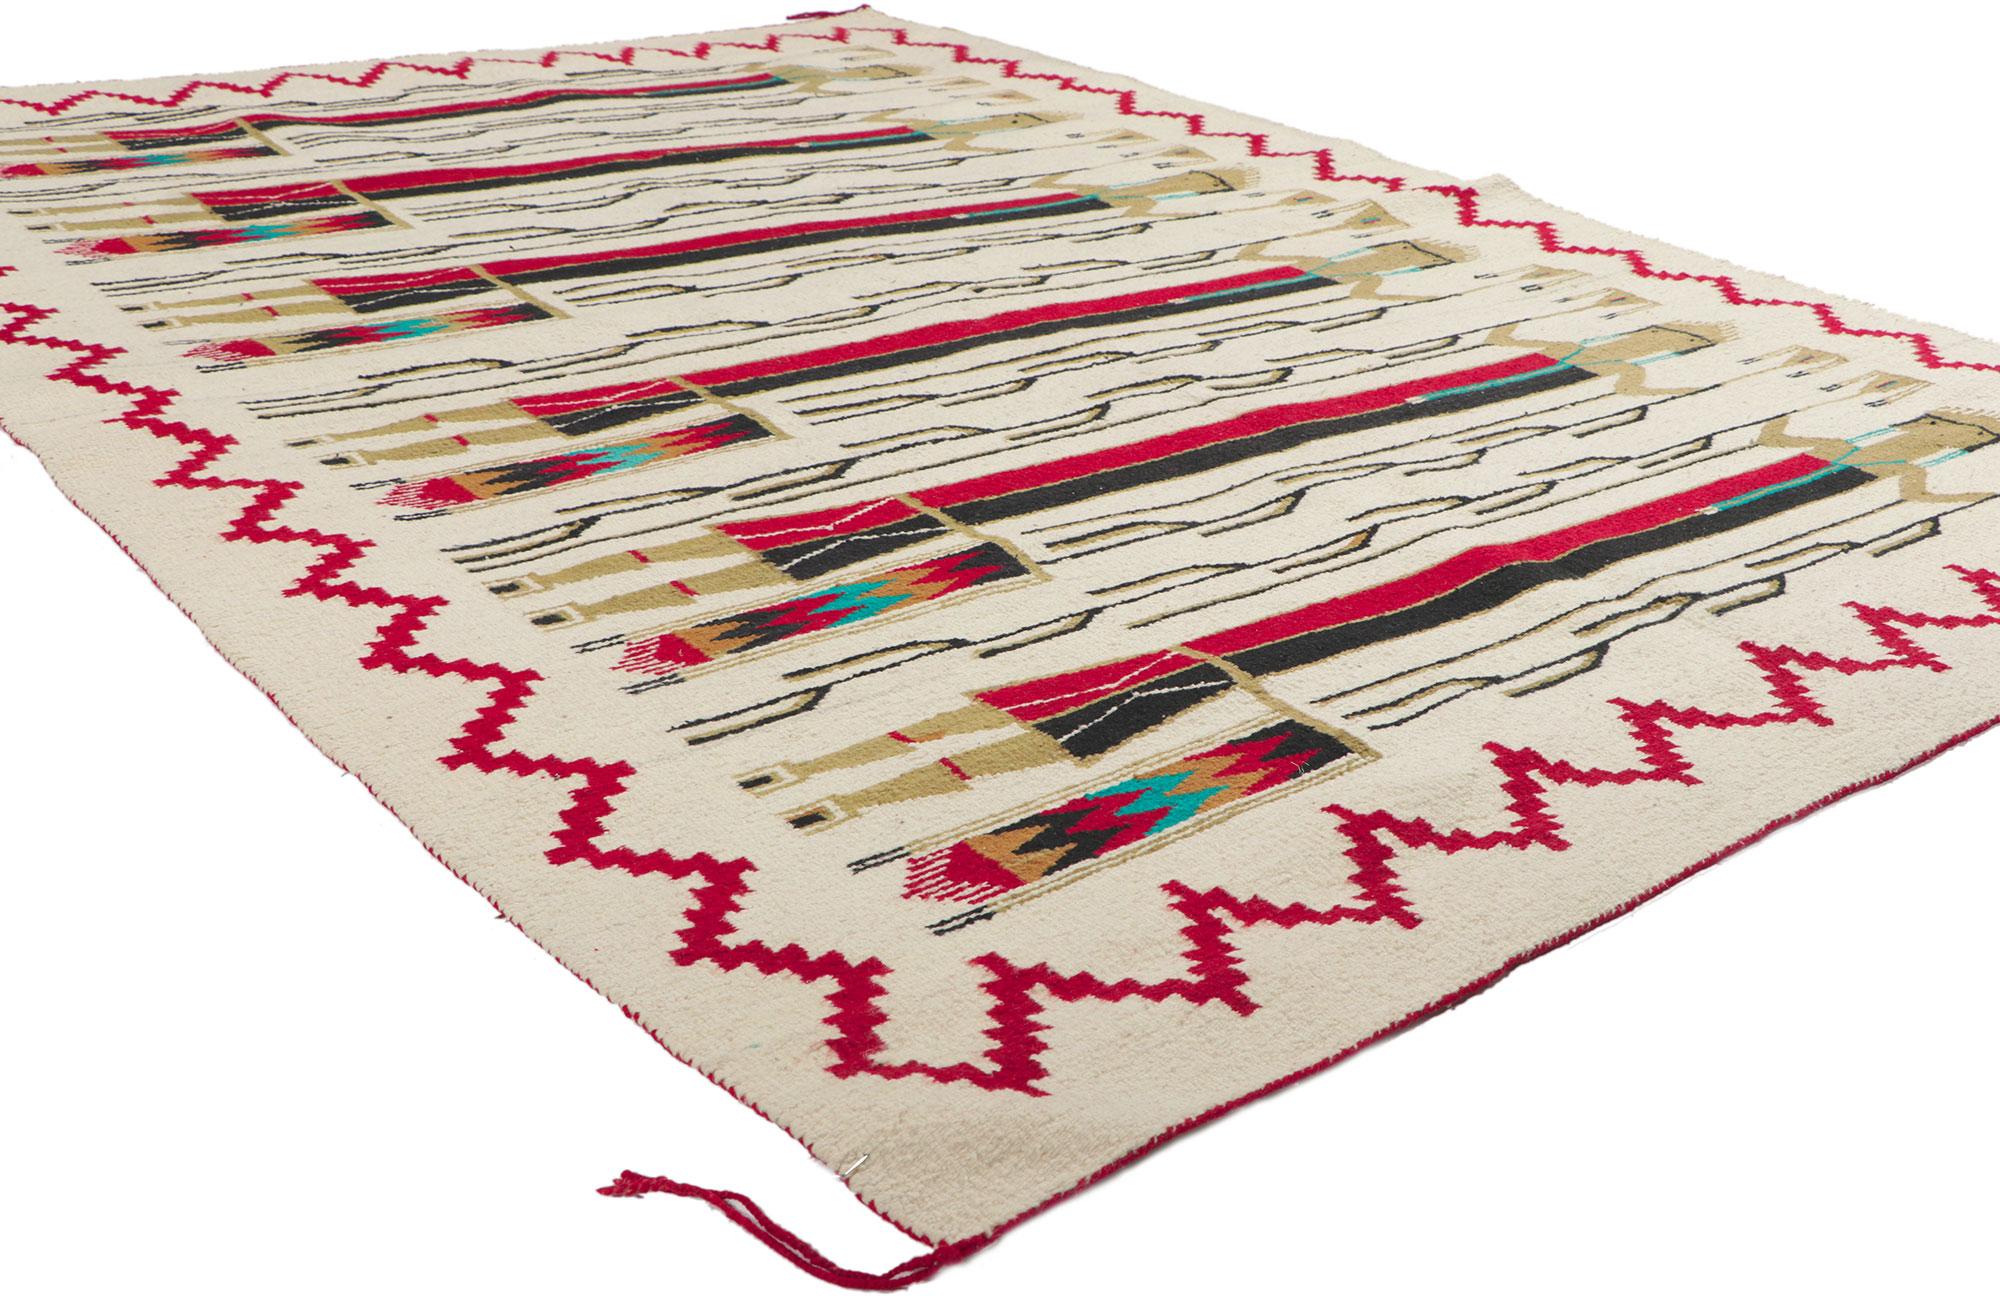 78502 Vintage Yeibichai Navajo-Teppich, 05'03 x 07'03. Dieser handgewebte Vintage-Navajo-Yeibichai-Teppich im Südwest-Stil besticht durch seine unglaubliche Detailtreue und Textur und ist eine faszinierende Vision gewebter Schönheit. Das auffällige